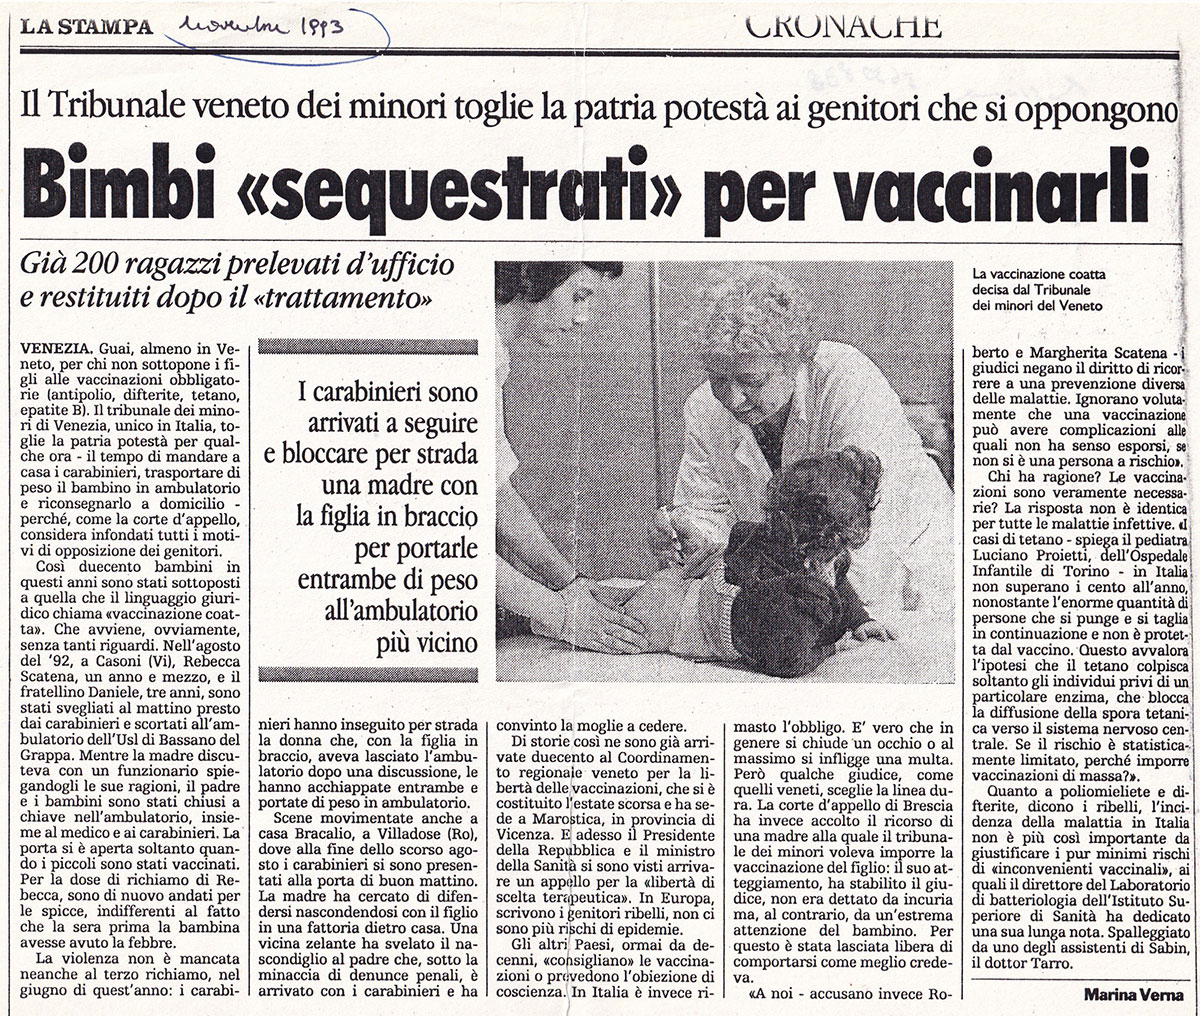 ילדים "נתפסים" כדי להתחסן. לה סטמפה, נובמבר 1993